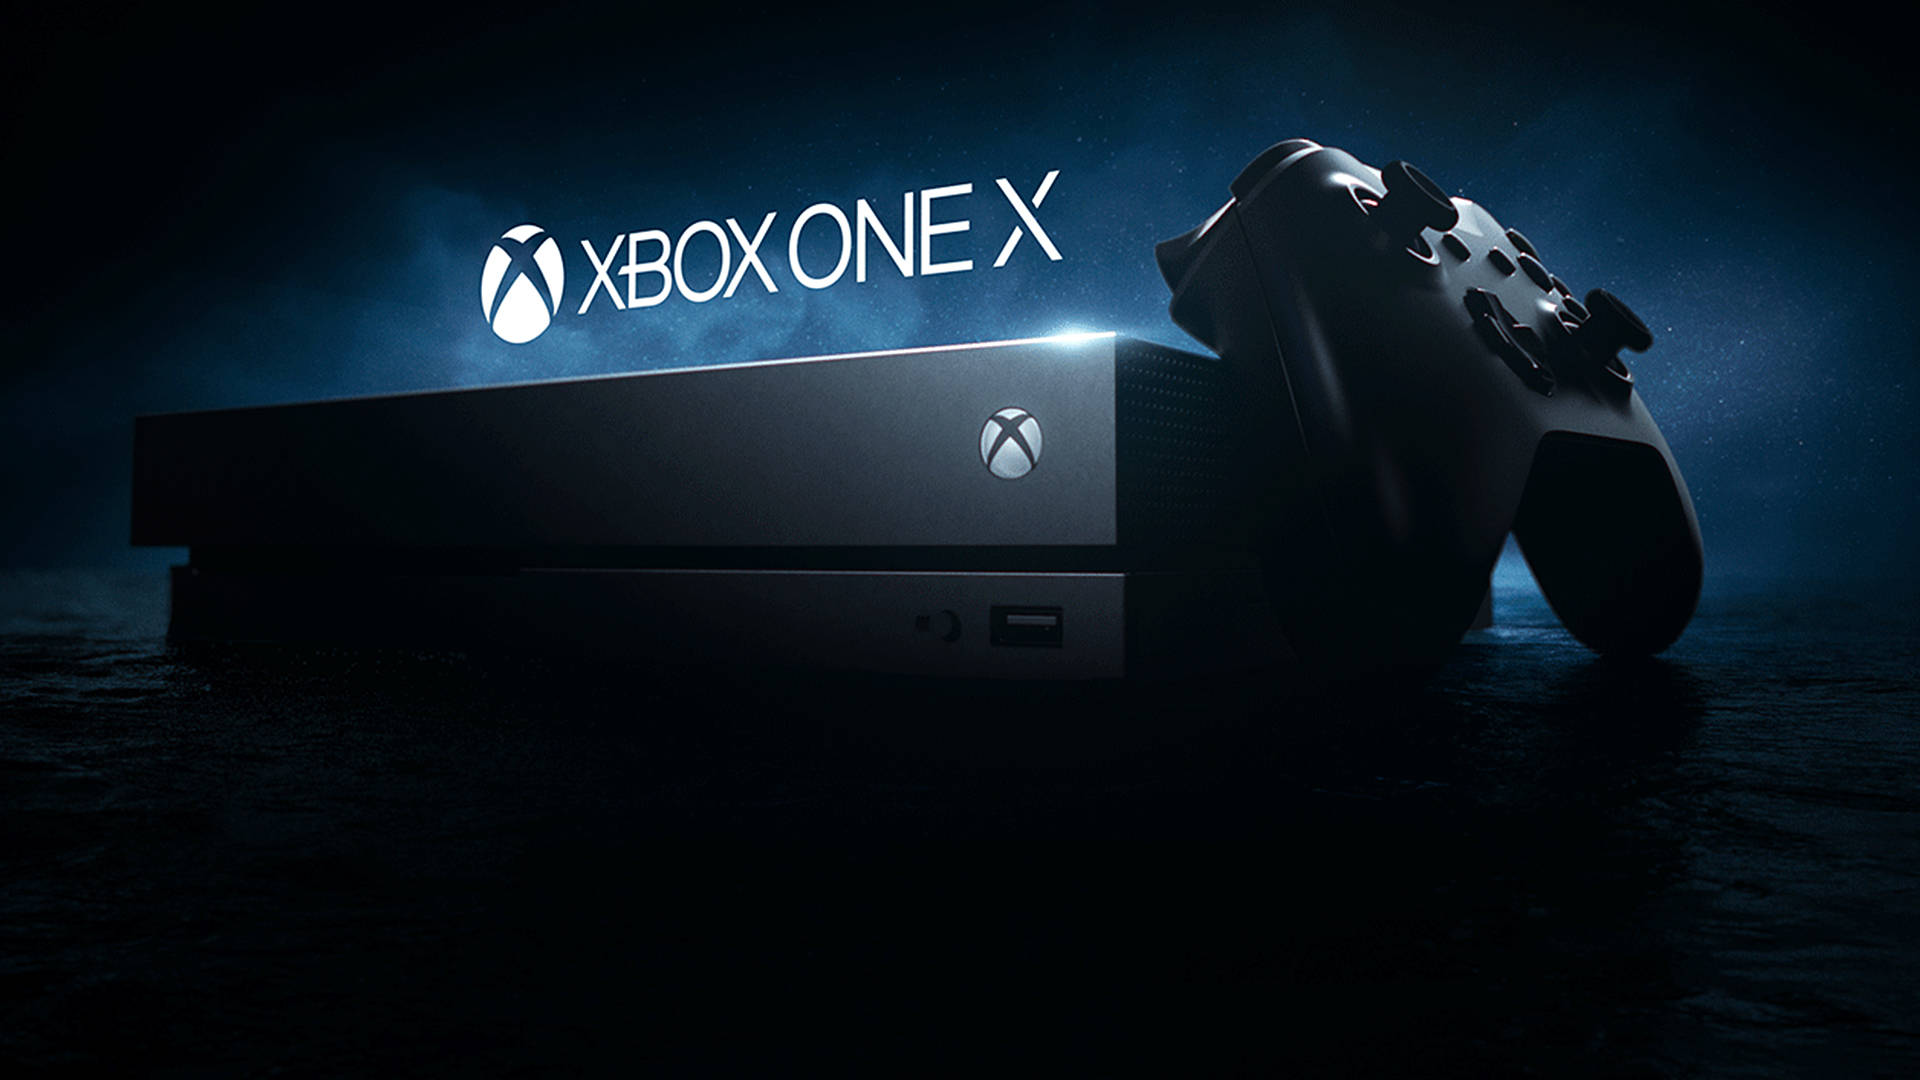 Nếu bạn đang tìm kiếm những hình nền Xbox One X đẹp mắt và ấn tượng, thì mời bạn ghé thăm trang web của chúng tôi ngay bây giờ. Với những thiết kế độc đáo và tinh tế nhất, chúng tôi sẽ đem đến cho bạn một trải nghiệm hoàn toàn mới trên Xbox One X. 